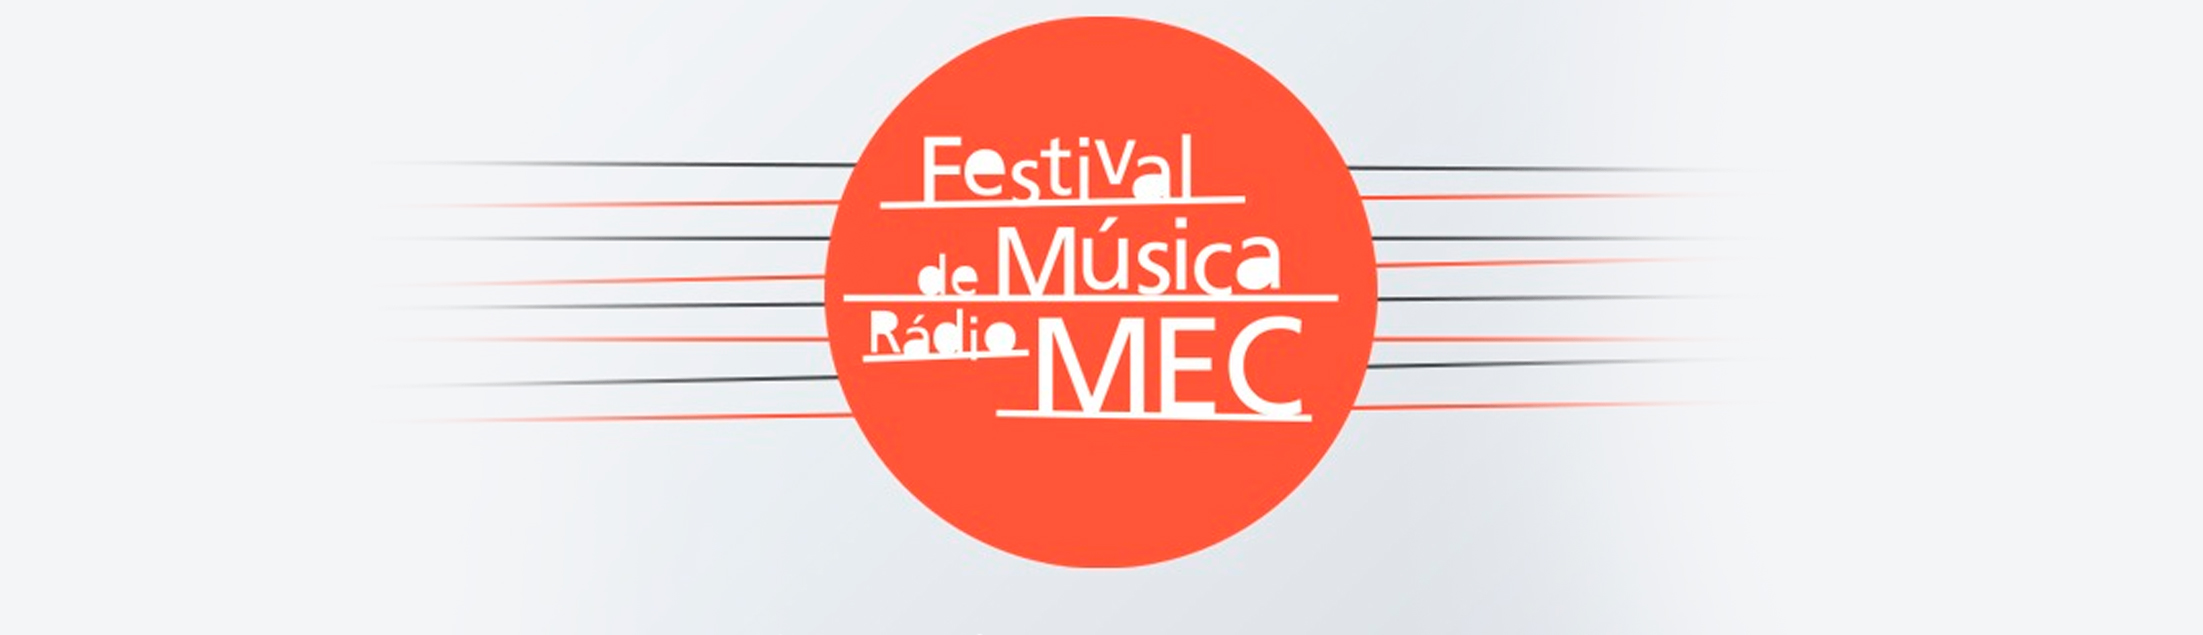 Inscrições abertas para o Festival de Música da Rádio MEC